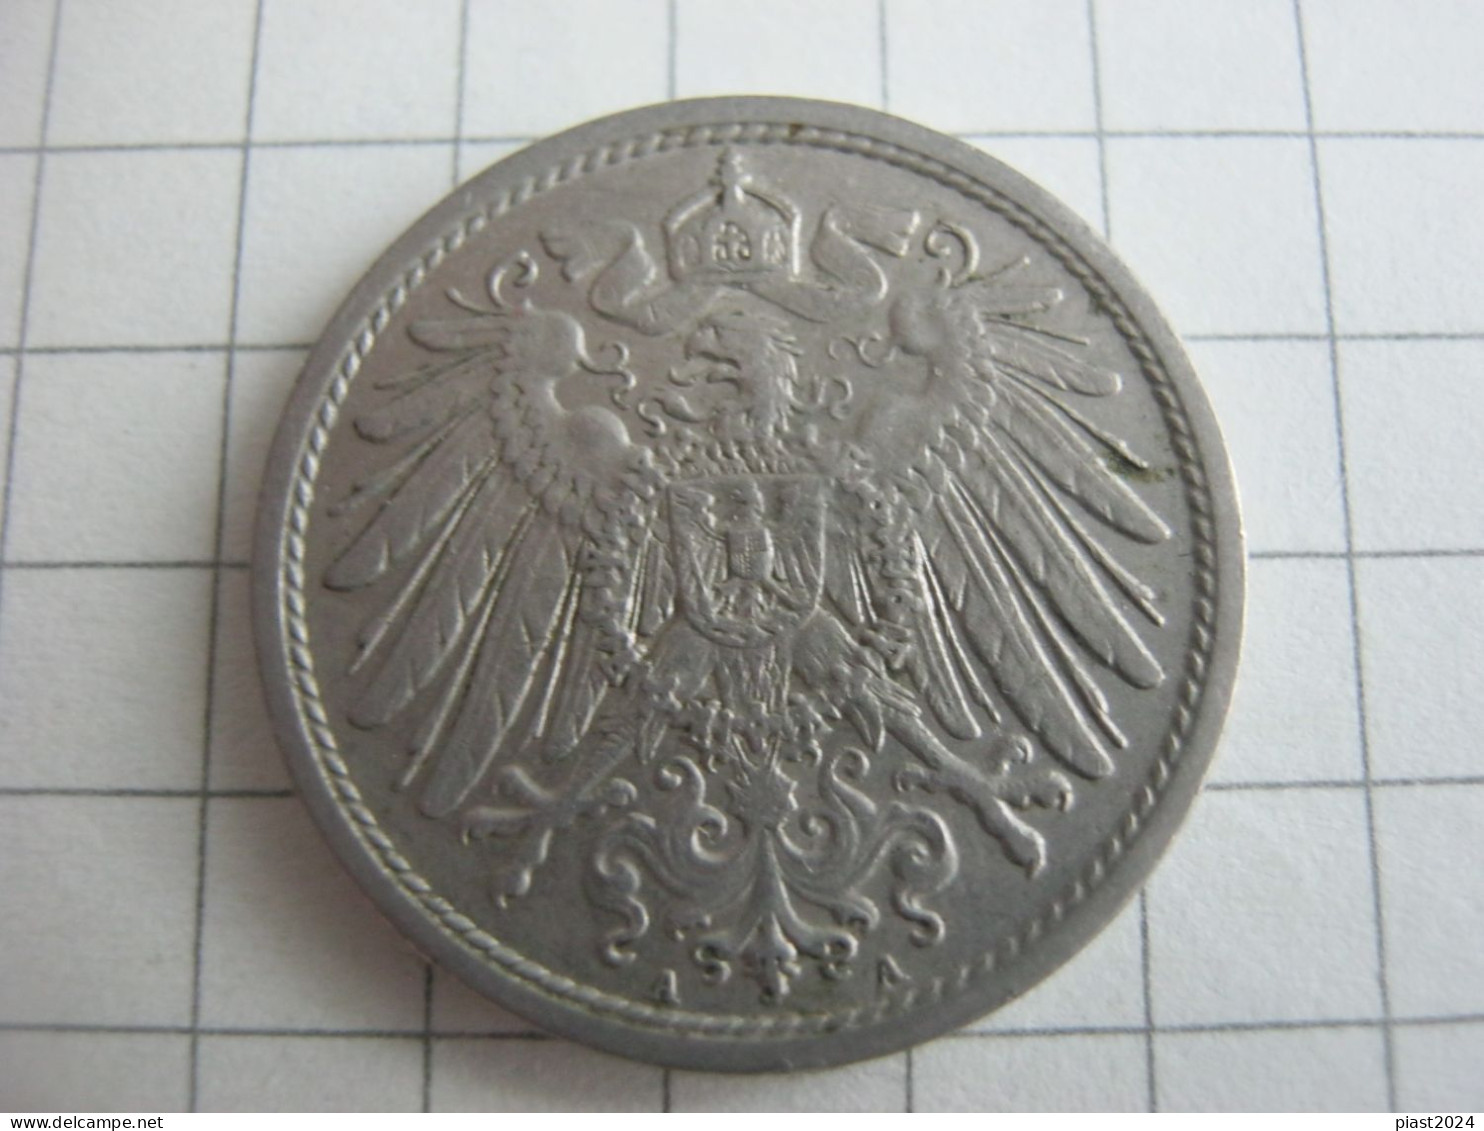 Germany 10 Pfennig 1913 A - 10 Pfennig